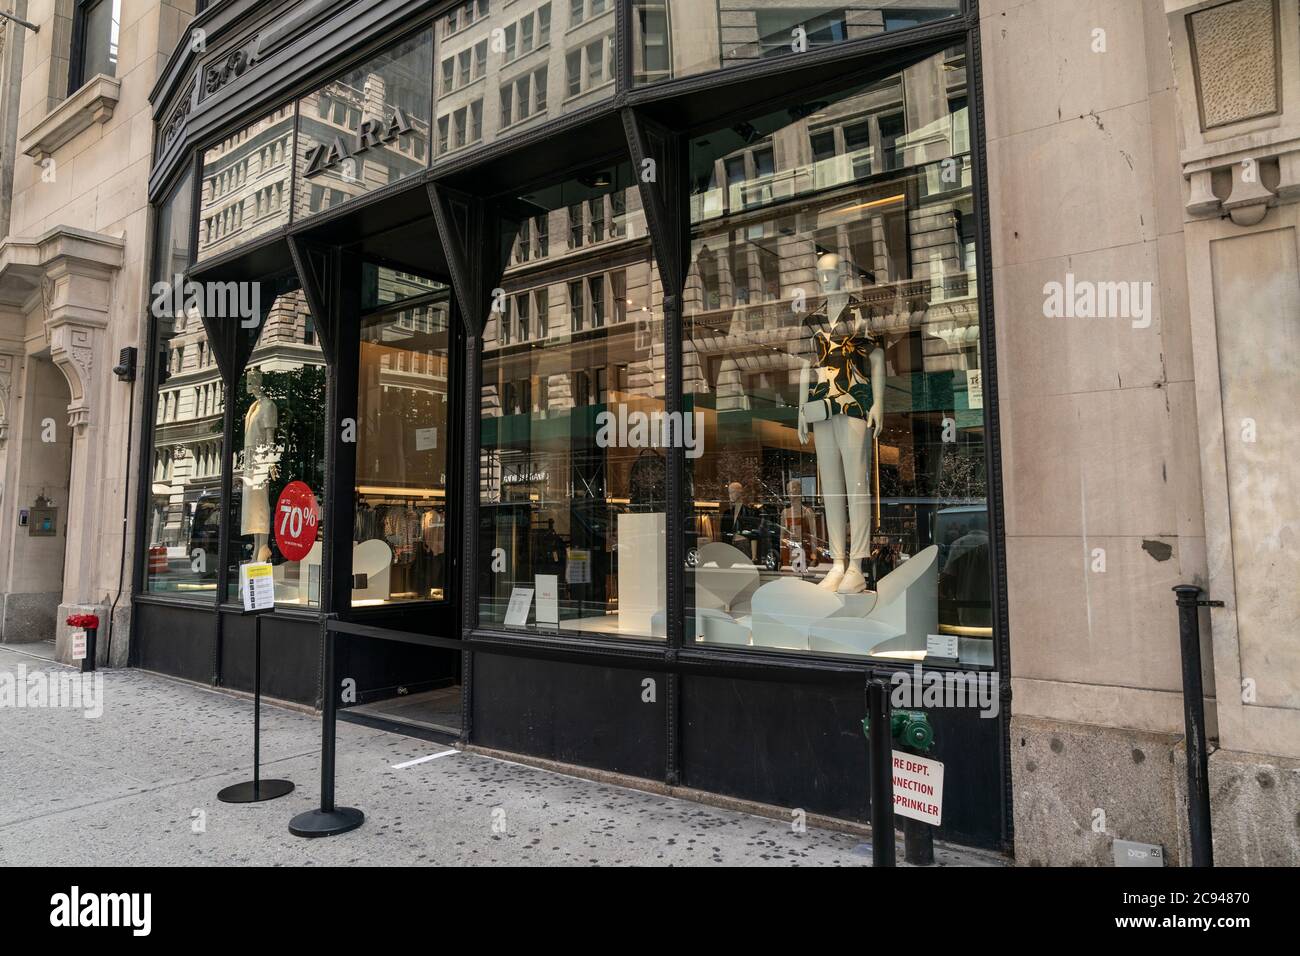 New York, États-Unis. 28 juillet 2020. Vue sur le magasin Zara sur la 5e  Avenue, Manhattan à New York le 28 juillet 2020. Inditex, propriétaire de  la marque, prévoit fermer plus de